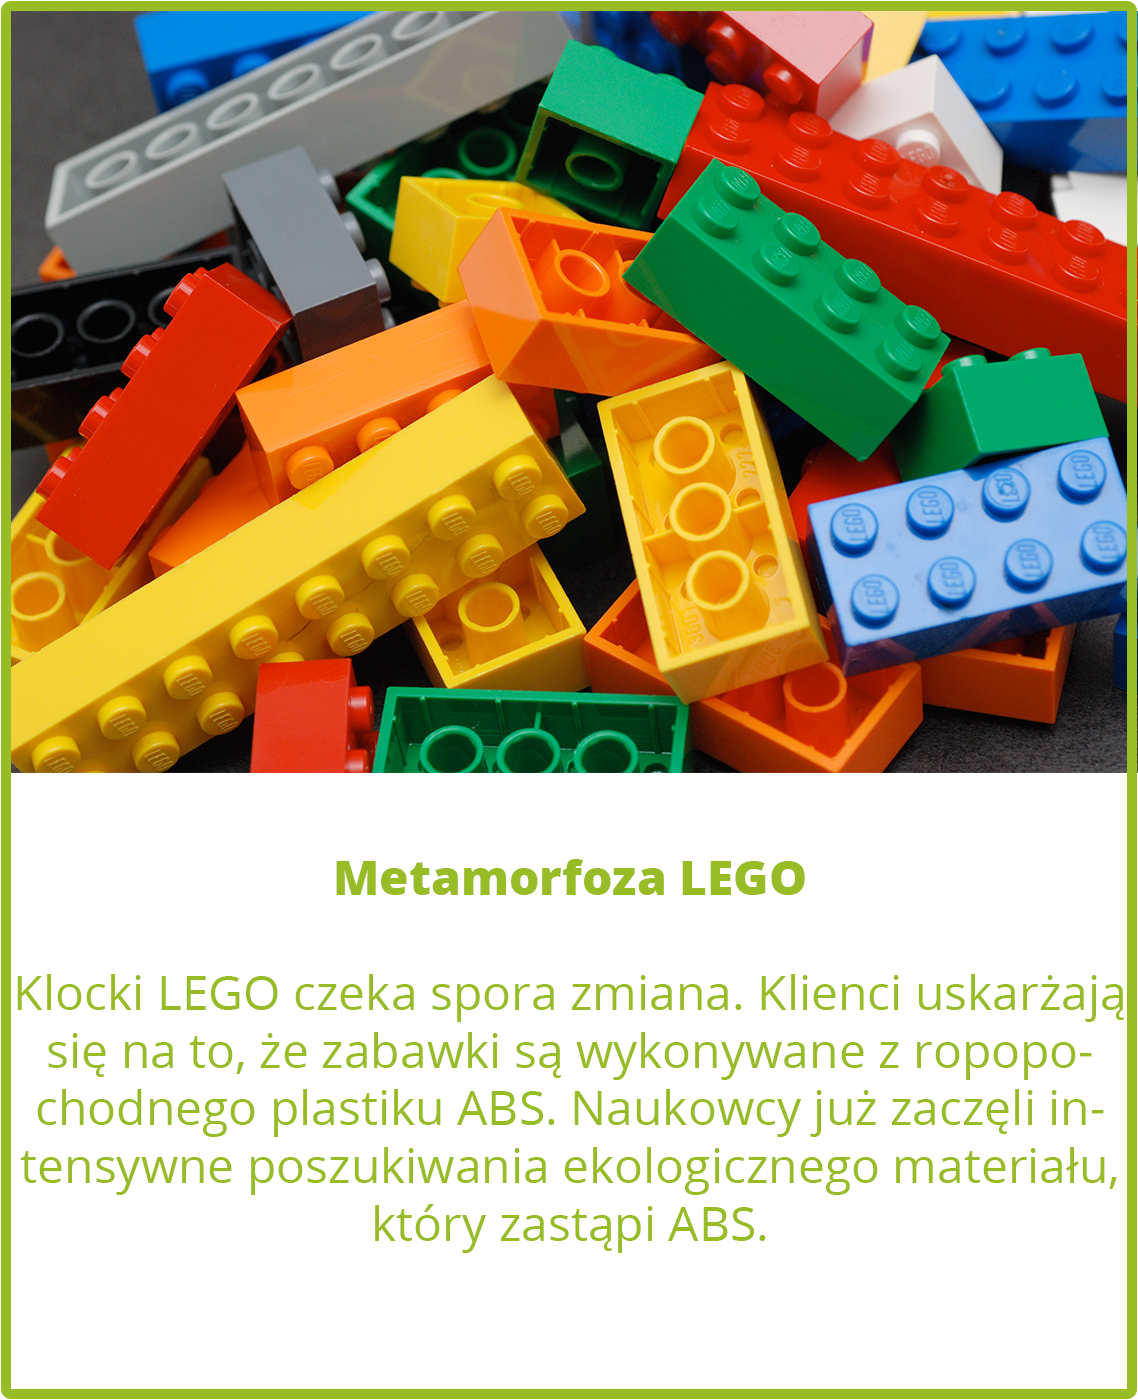 Metamorfoza LEGO